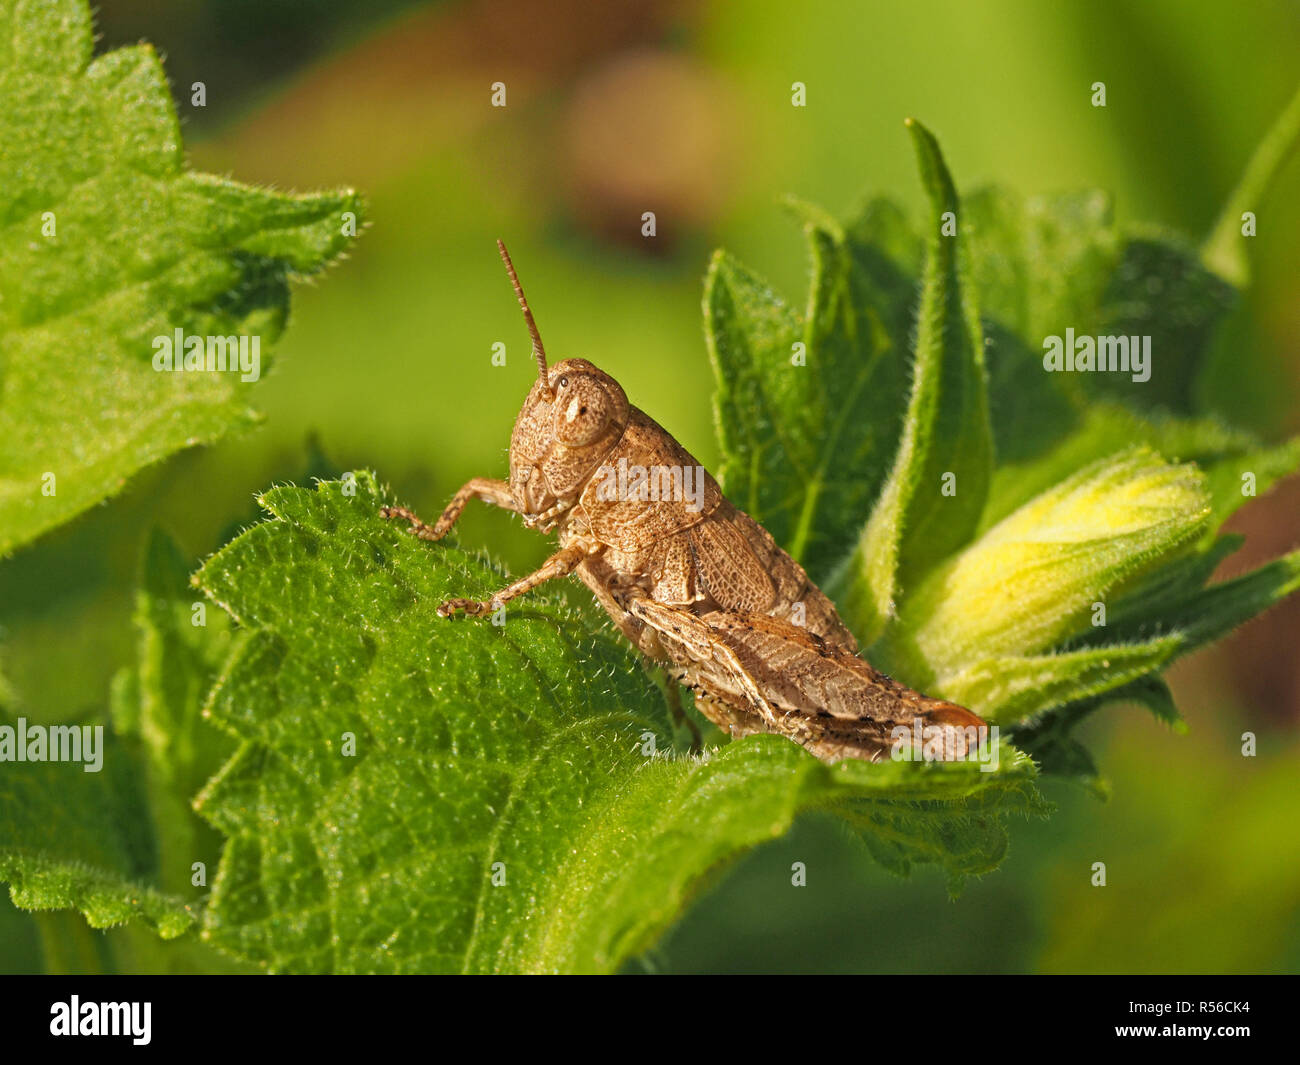 Flightless femmina macchia comune Grasshopper (Pezotettix giornae) con ali non sviluppate (Brachyptery) sul fogliame della macchia di Prato in Toscana, Italia Foto Stock